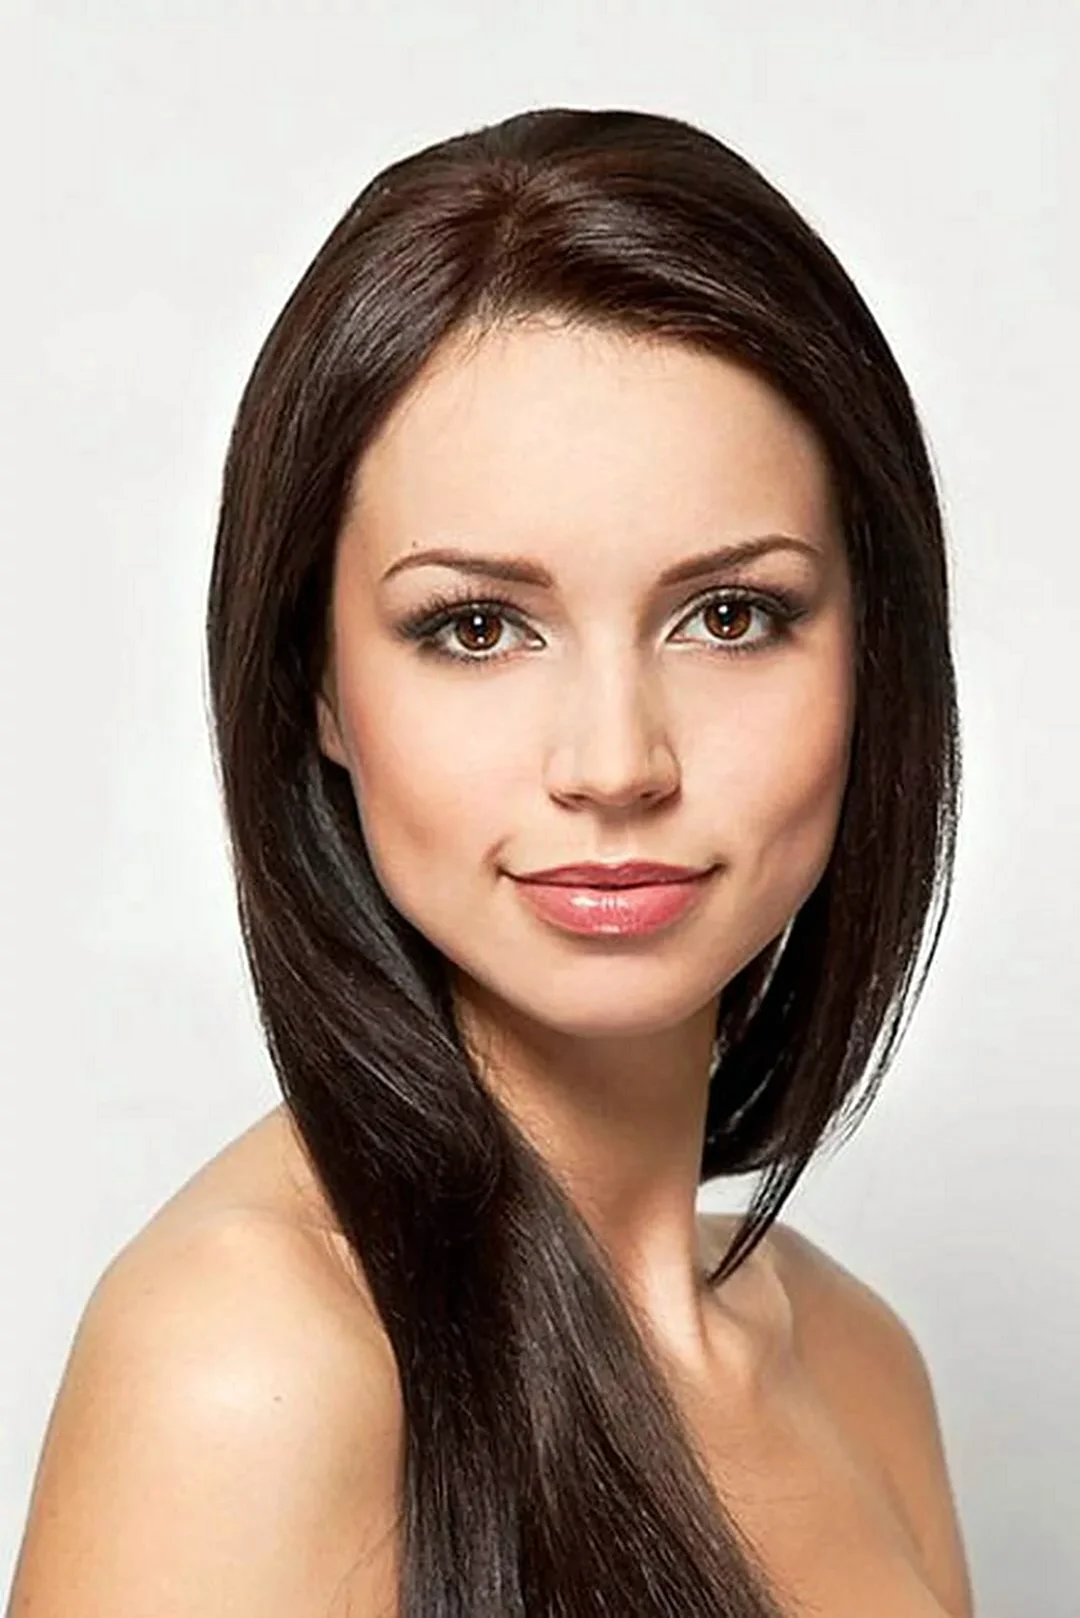 Элина Киреева. Красивая девушка